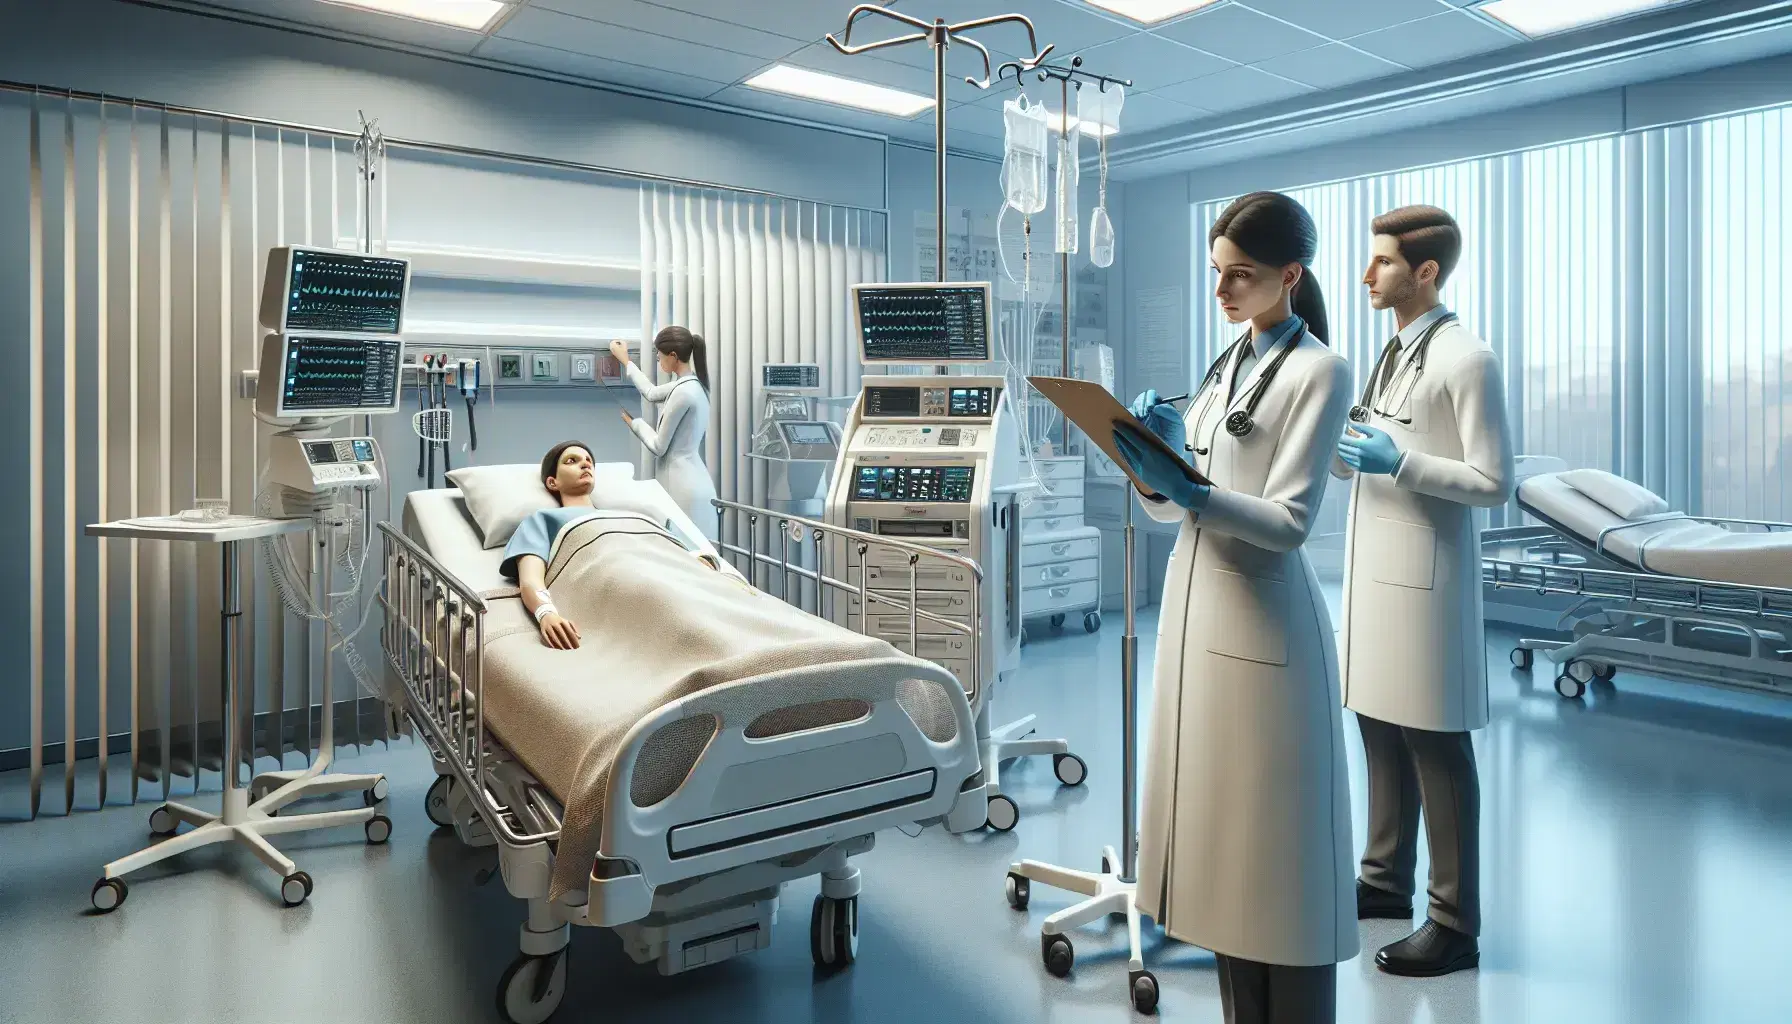 Profesionales de la salud en hospital revisando documentación y operando equipo médico, con paciente en cama al fondo en ambiente sereno.